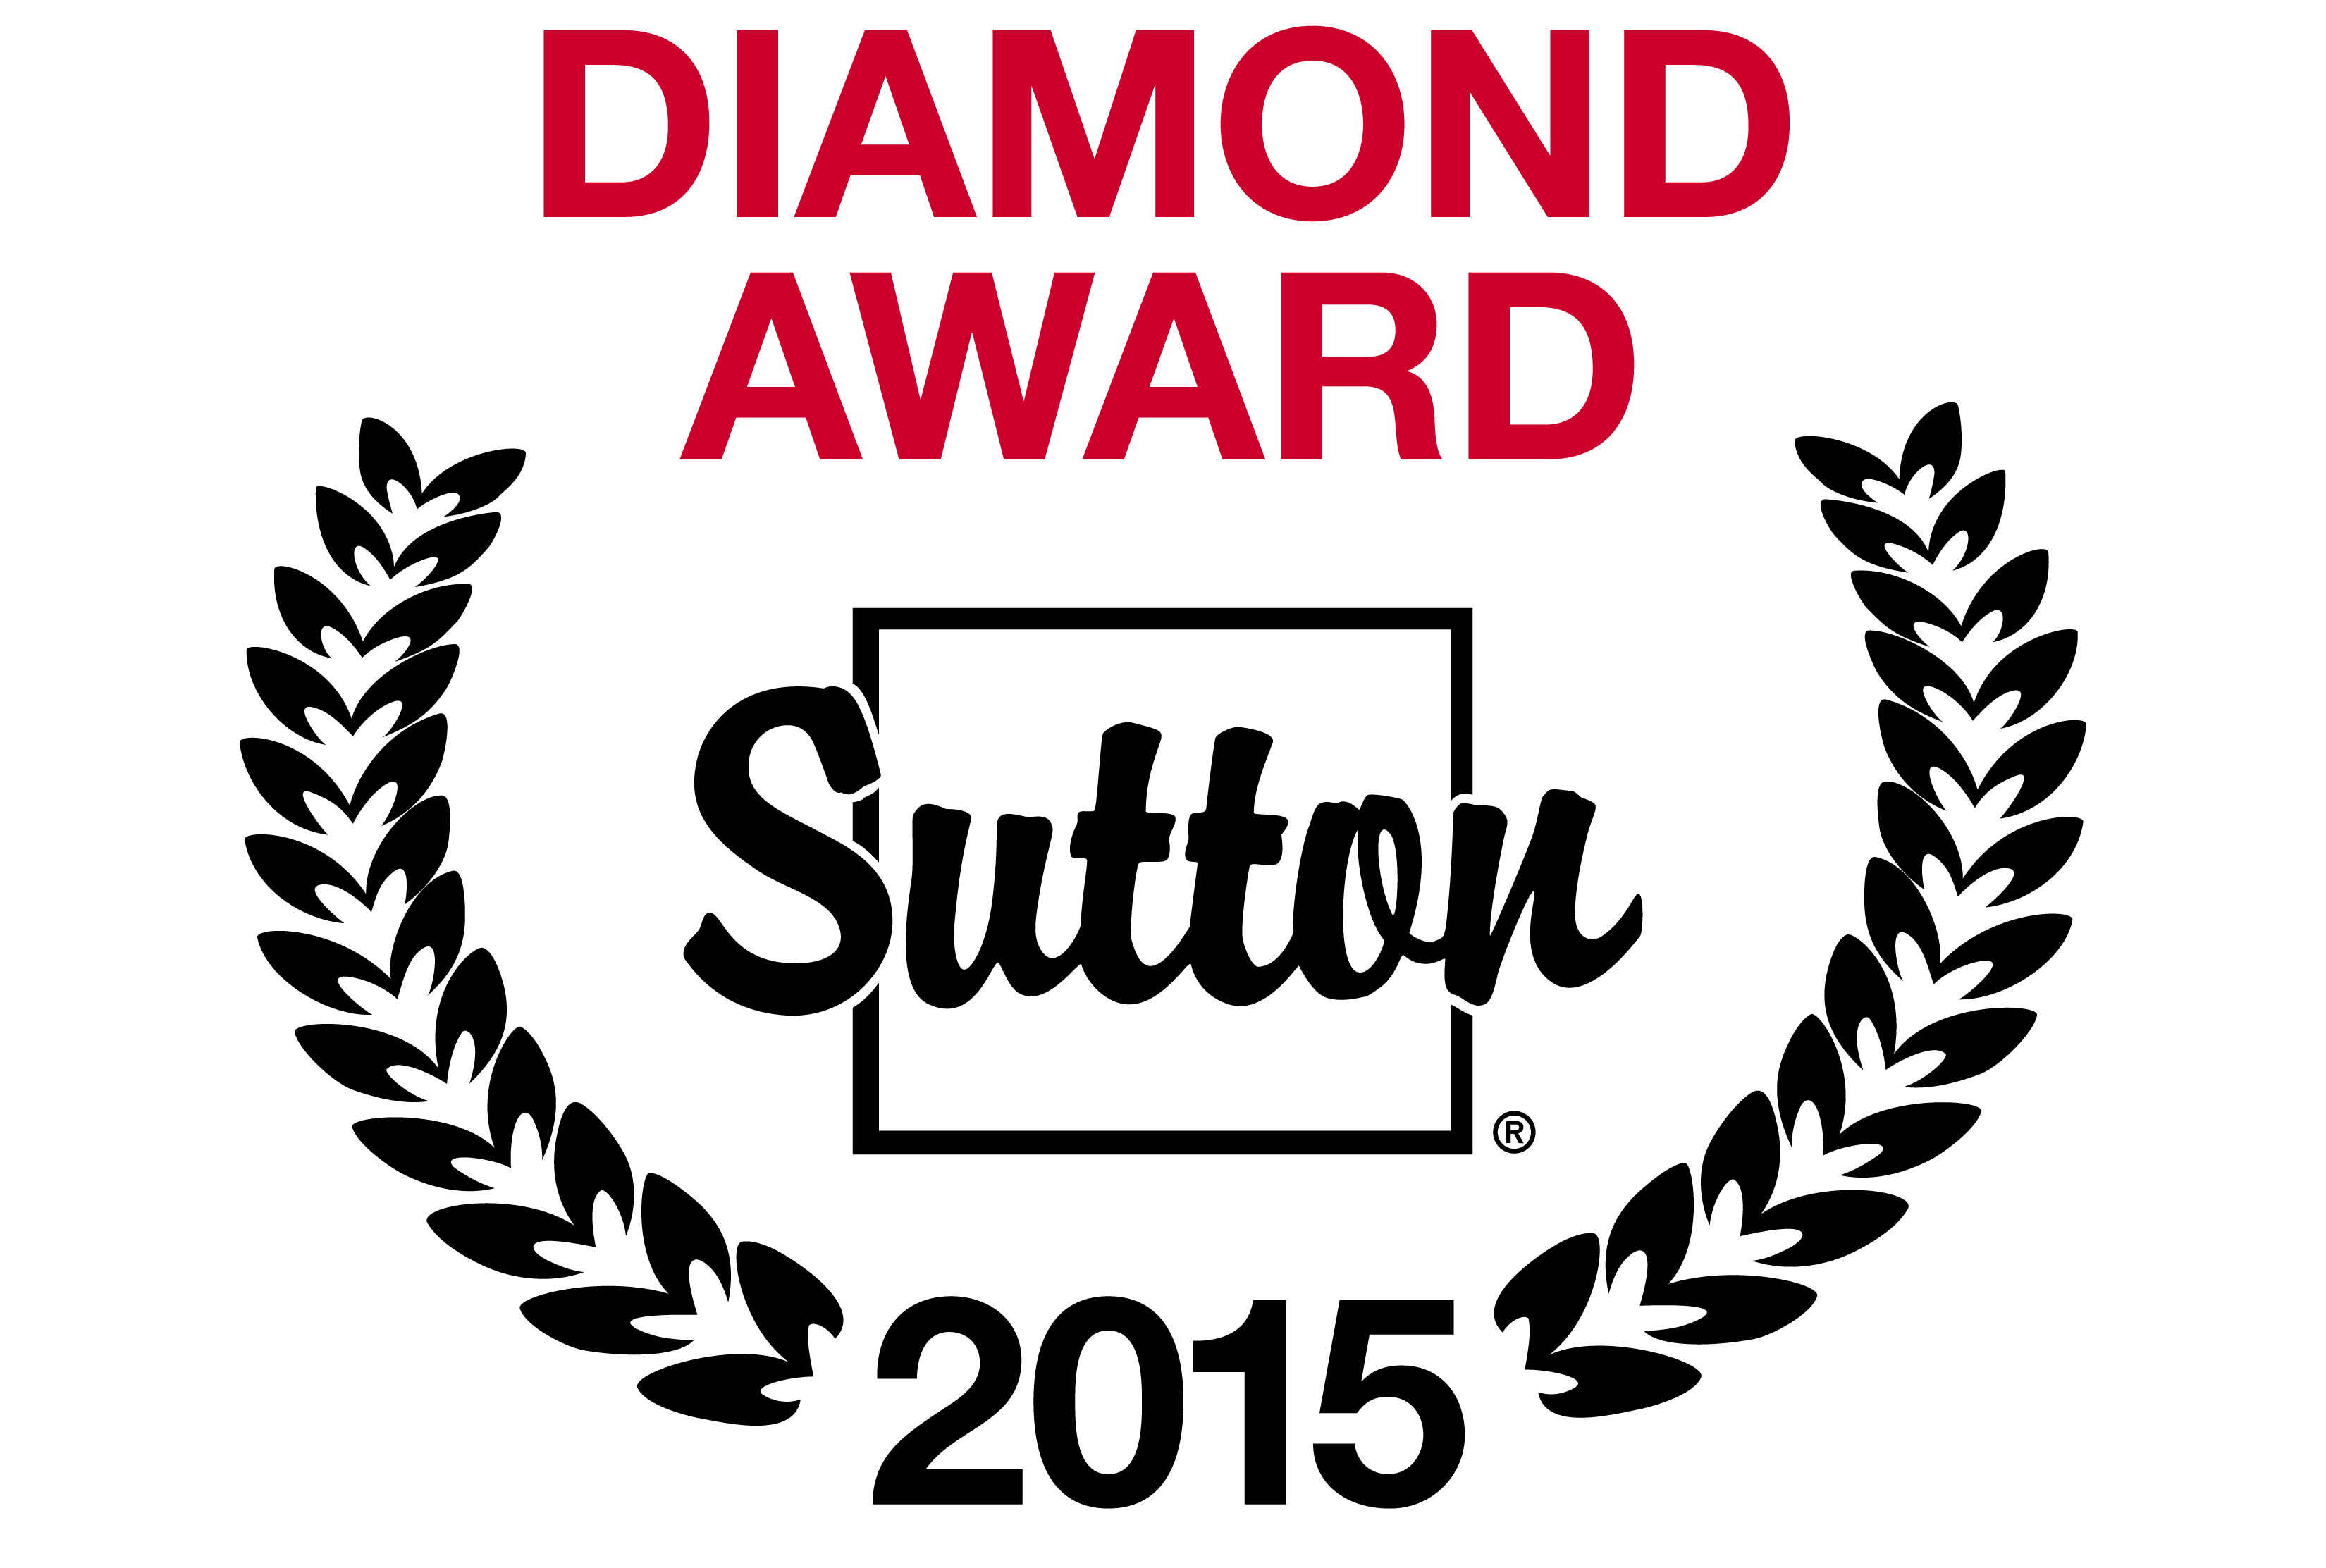 Diamond Award 2015